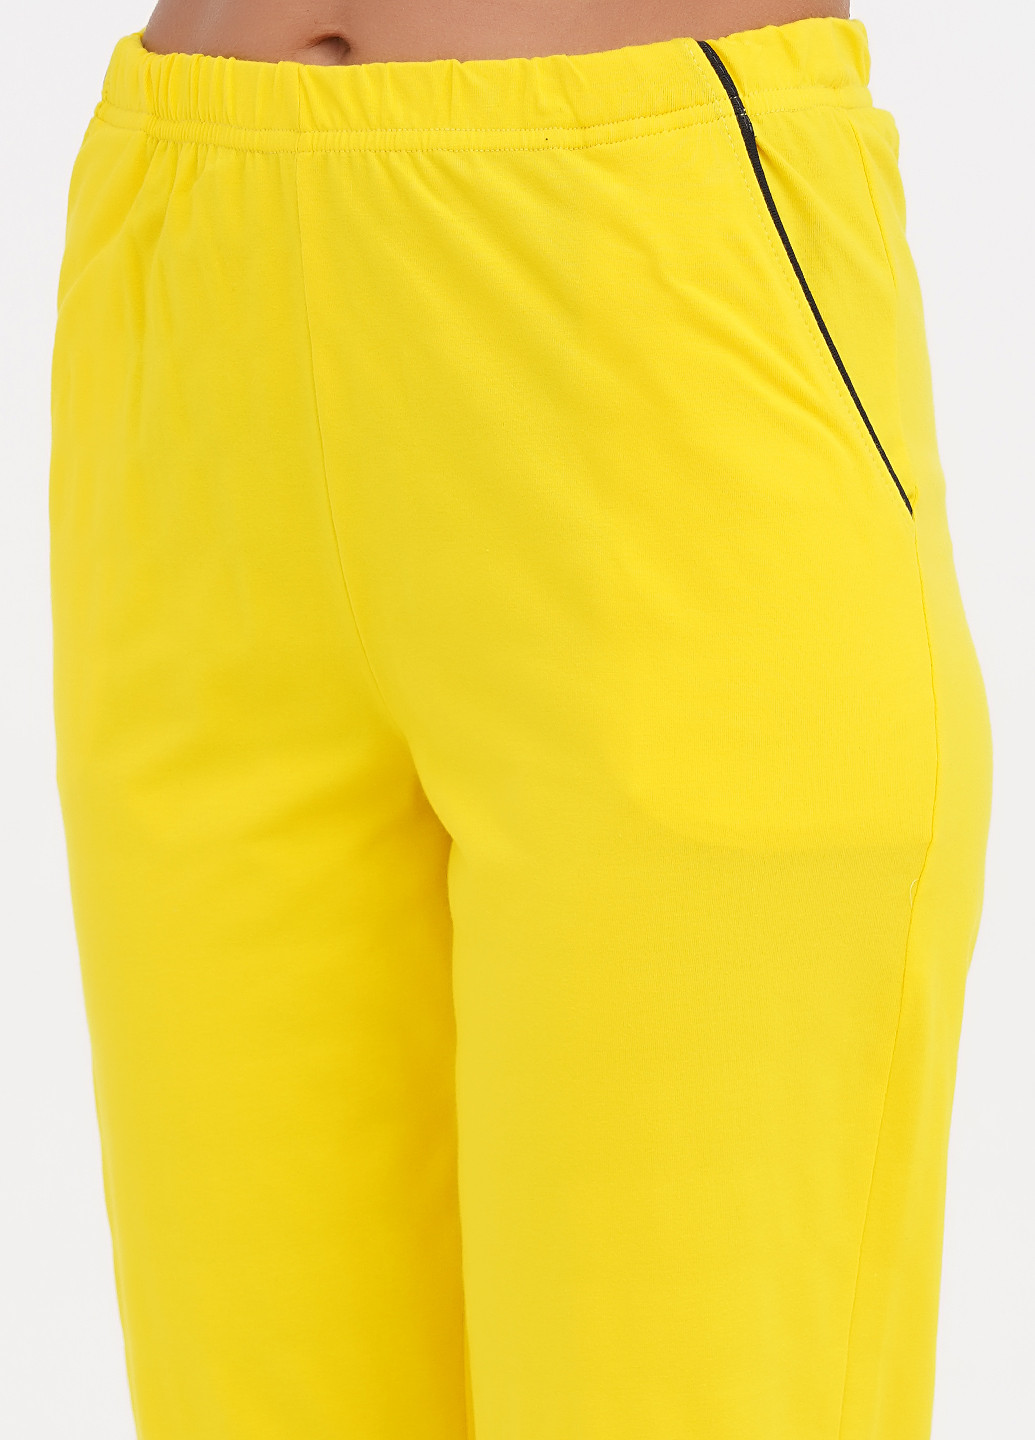 Желтая всесезон пижама (футболка, брюки) футболка + брюки Lucci